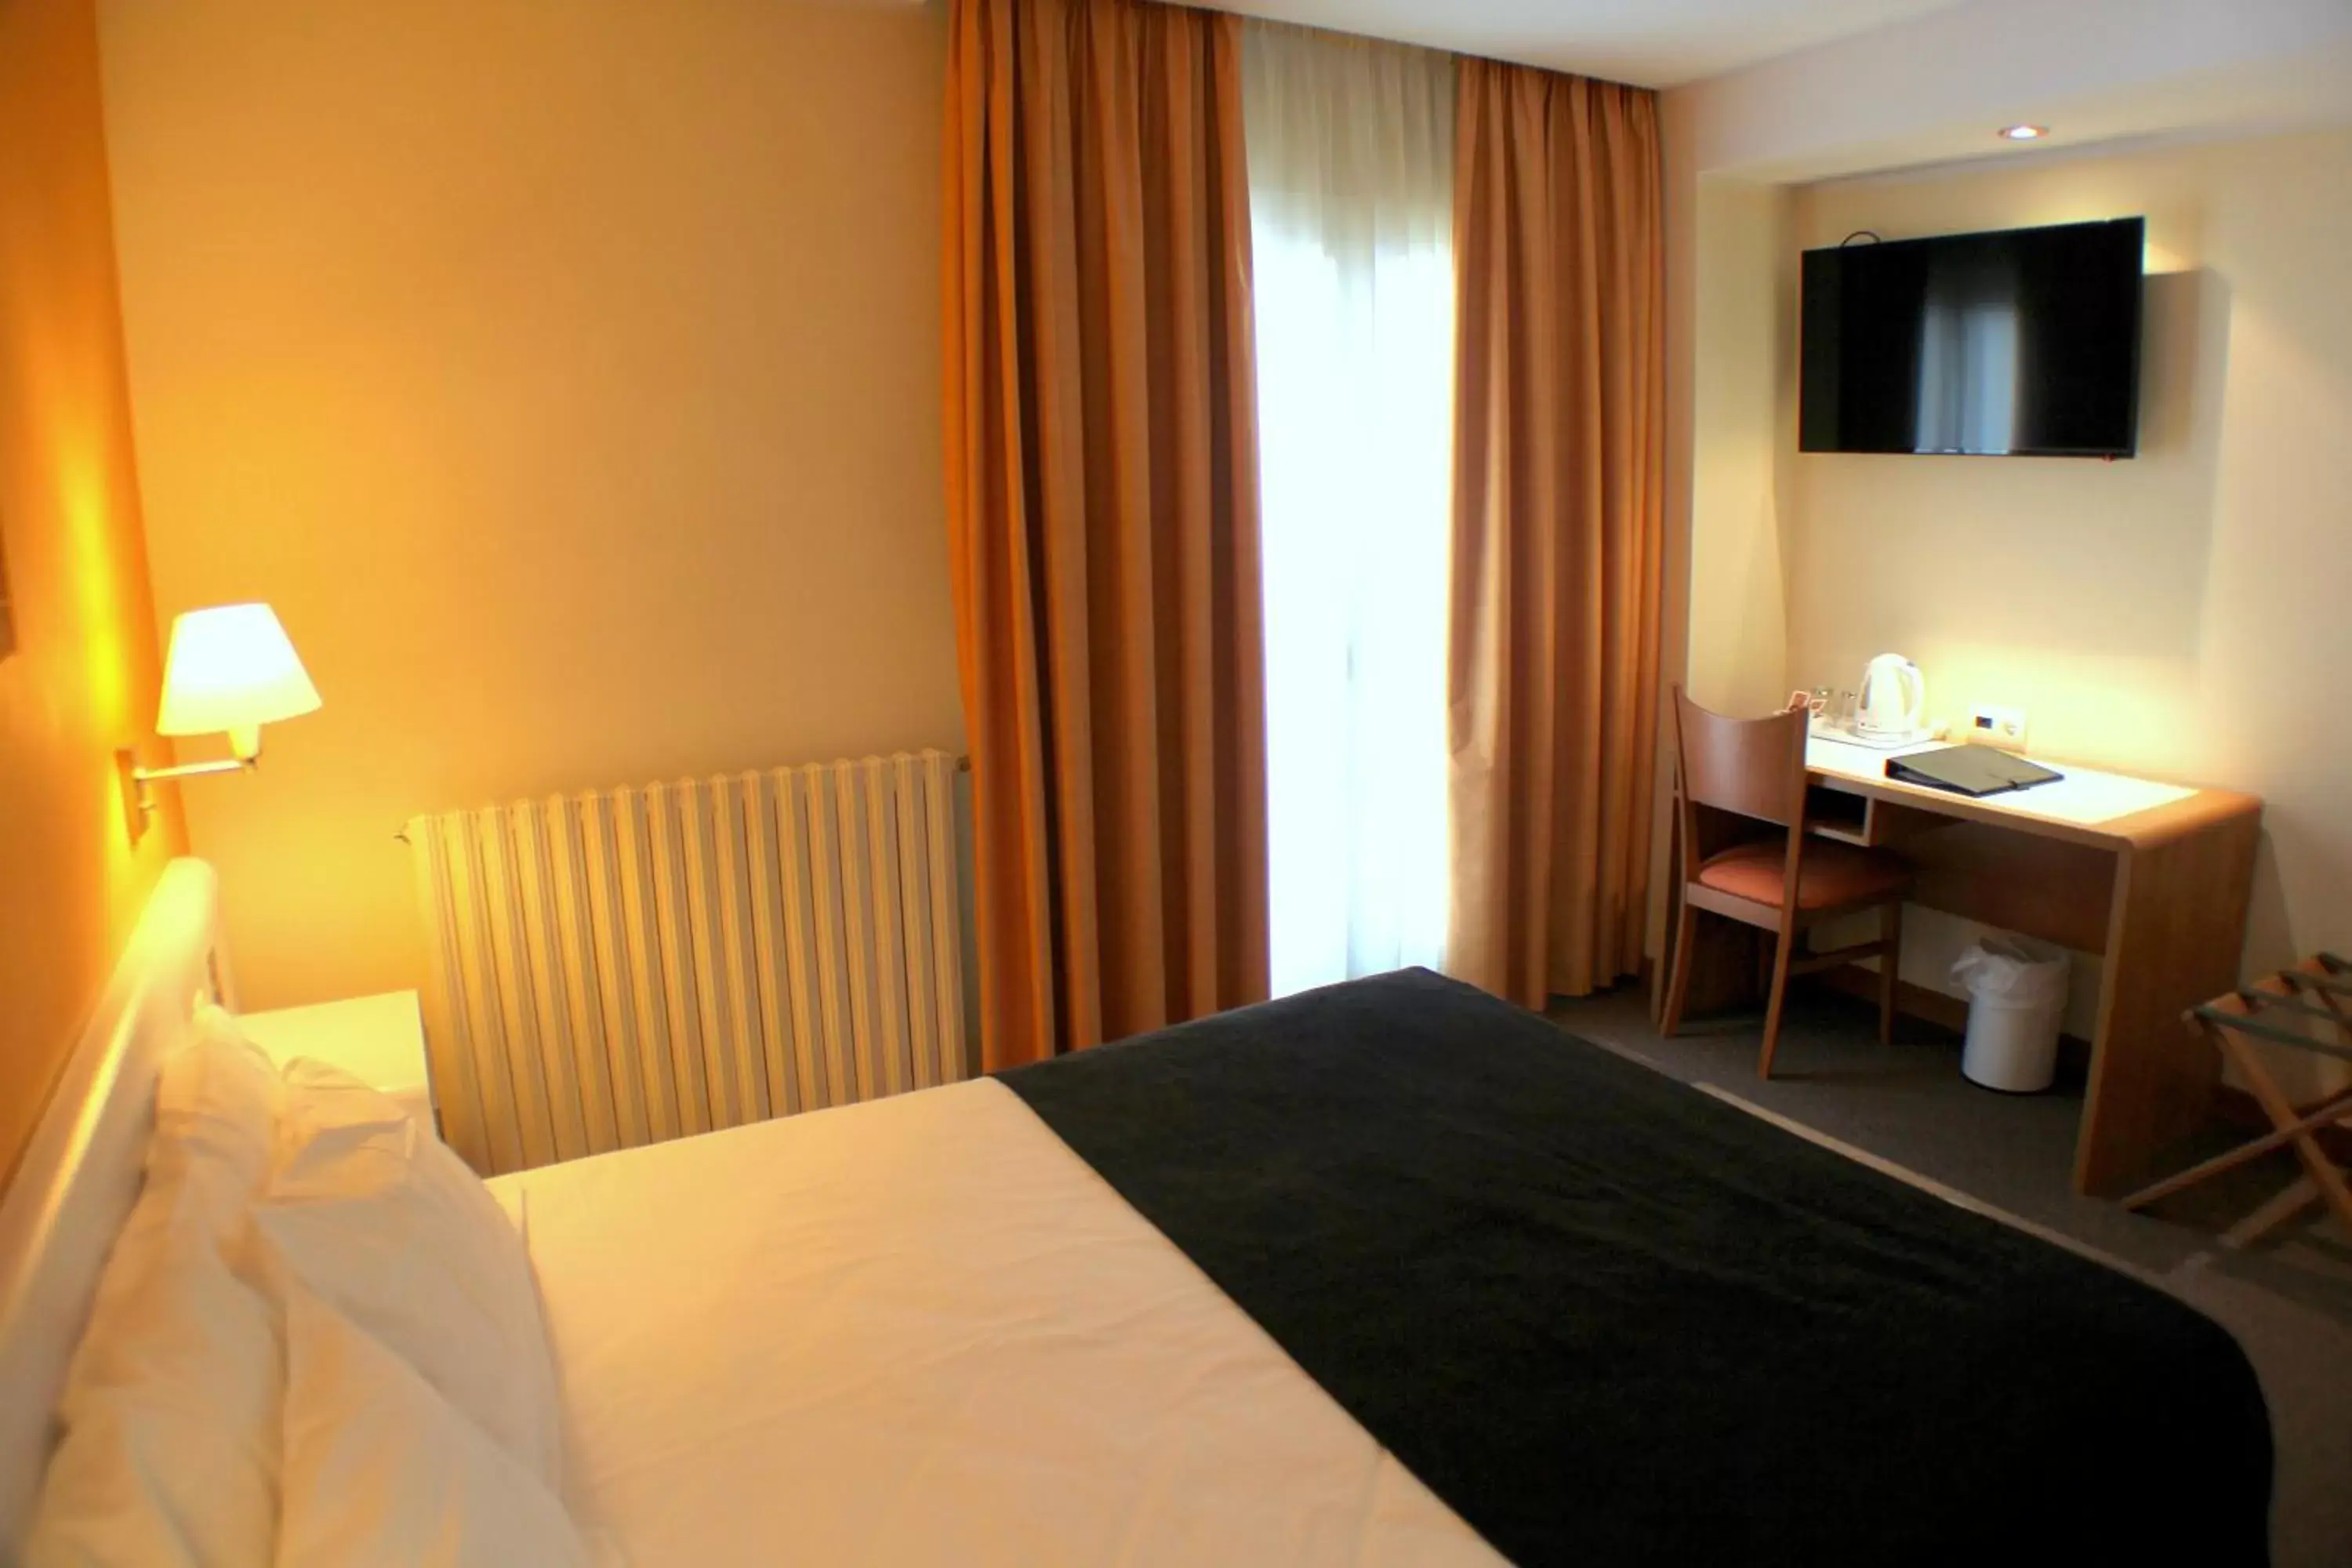 Bed, Room Photo in Hotel Kandahar